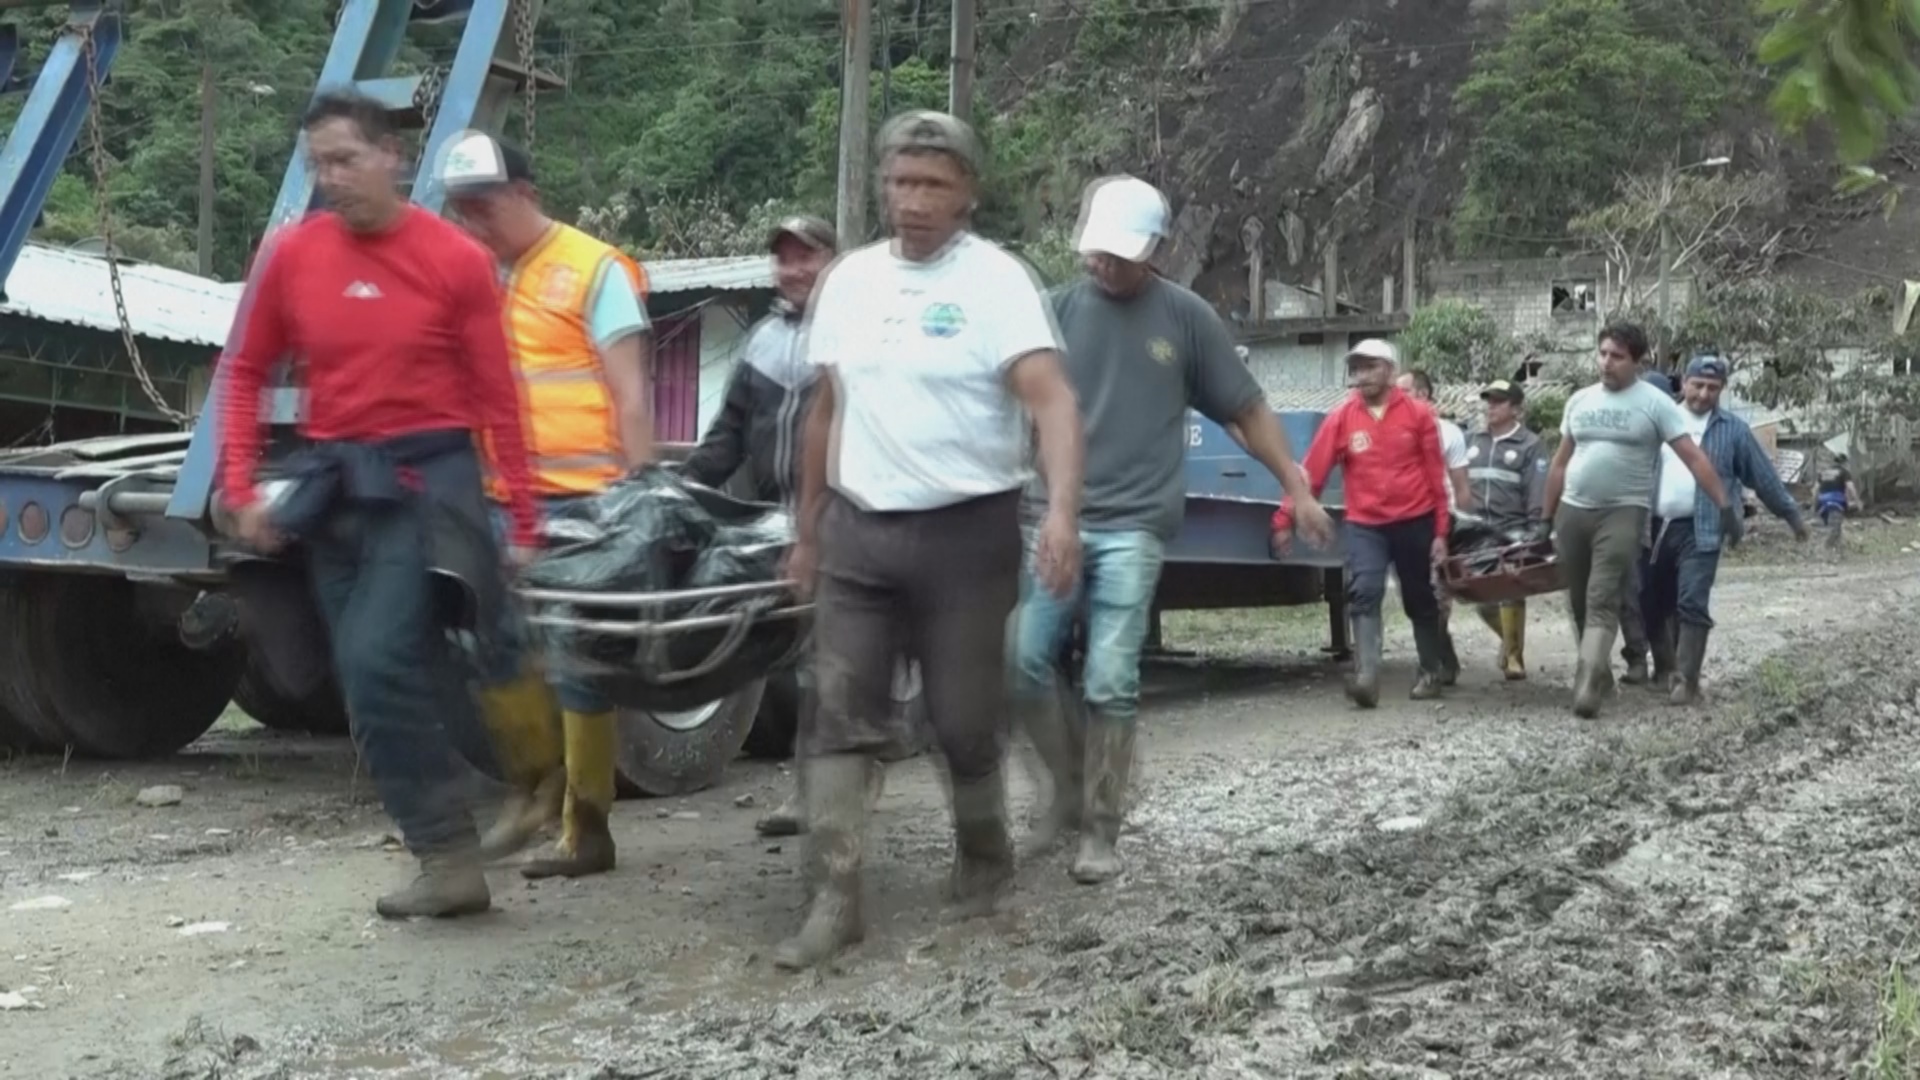 Непогода обрушилась на Эквадор: не менее 10 погибших